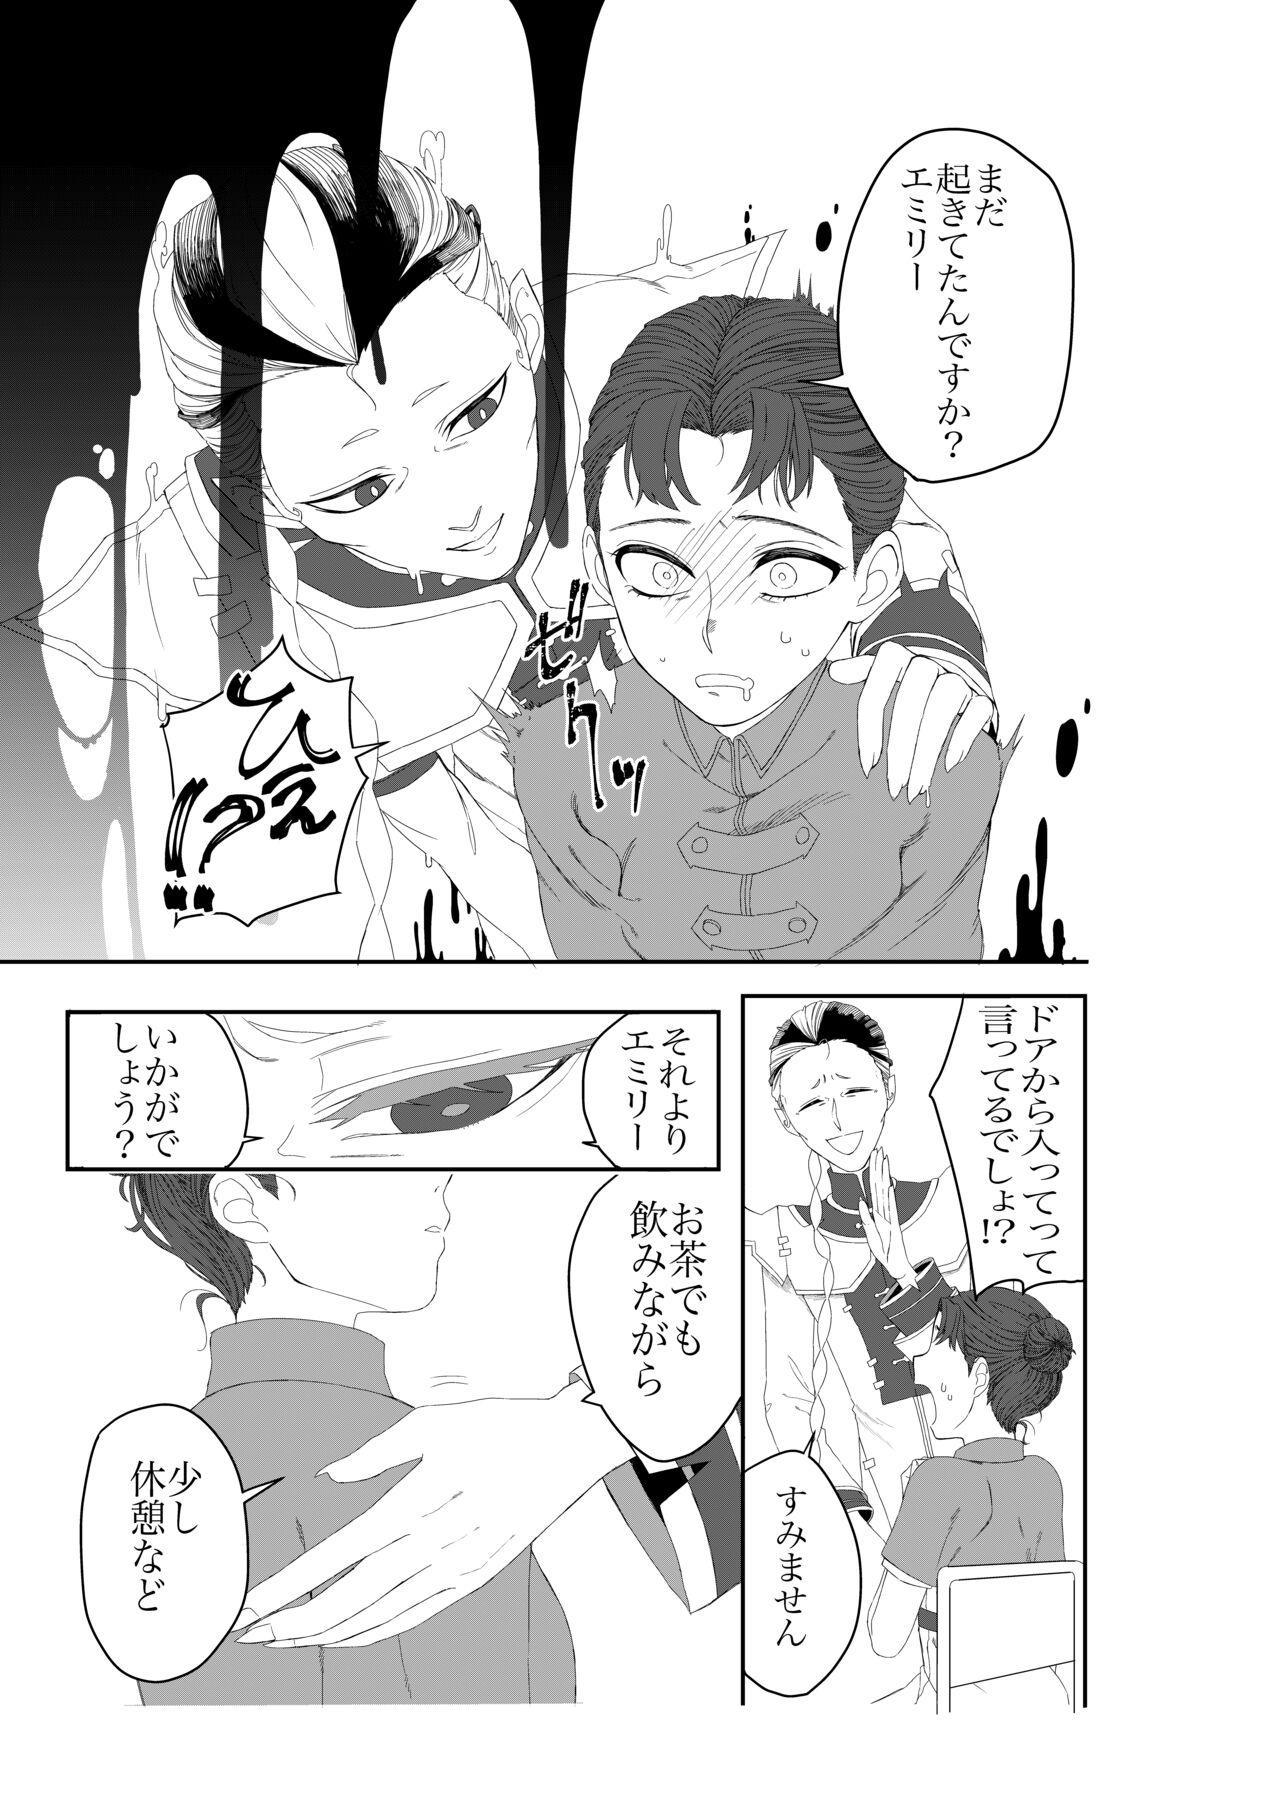 Shirokuro Emi R18 Manga & Irasuto Matome 3